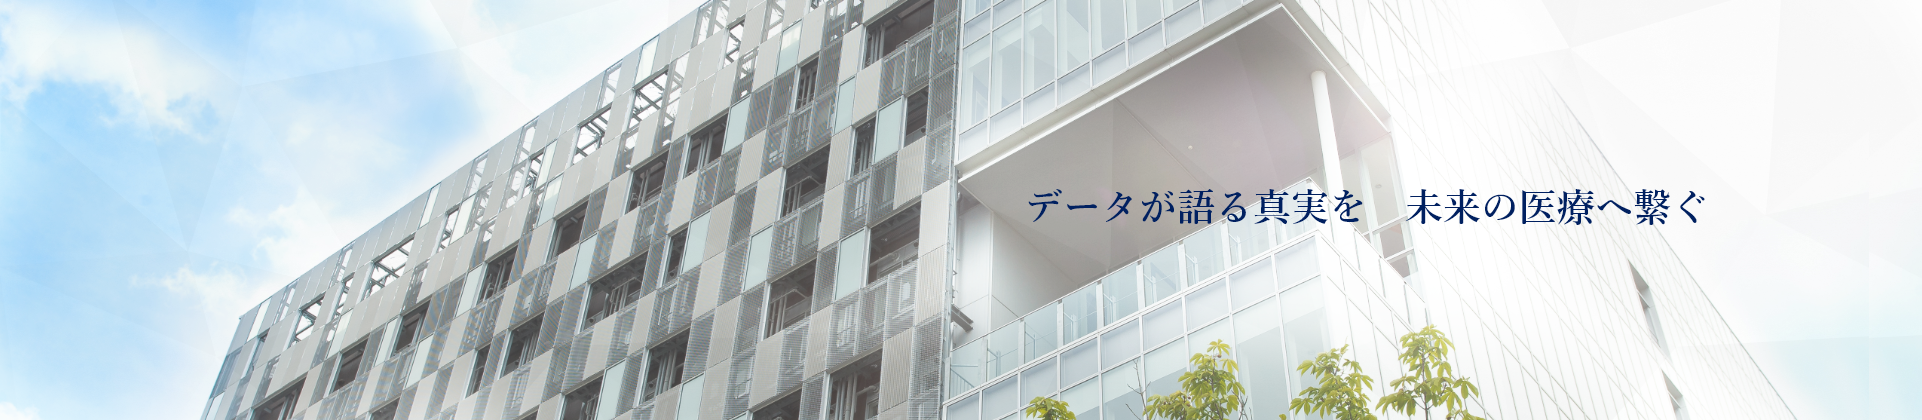 大阪大学医学部附属病院 未来医療開発部データセンター